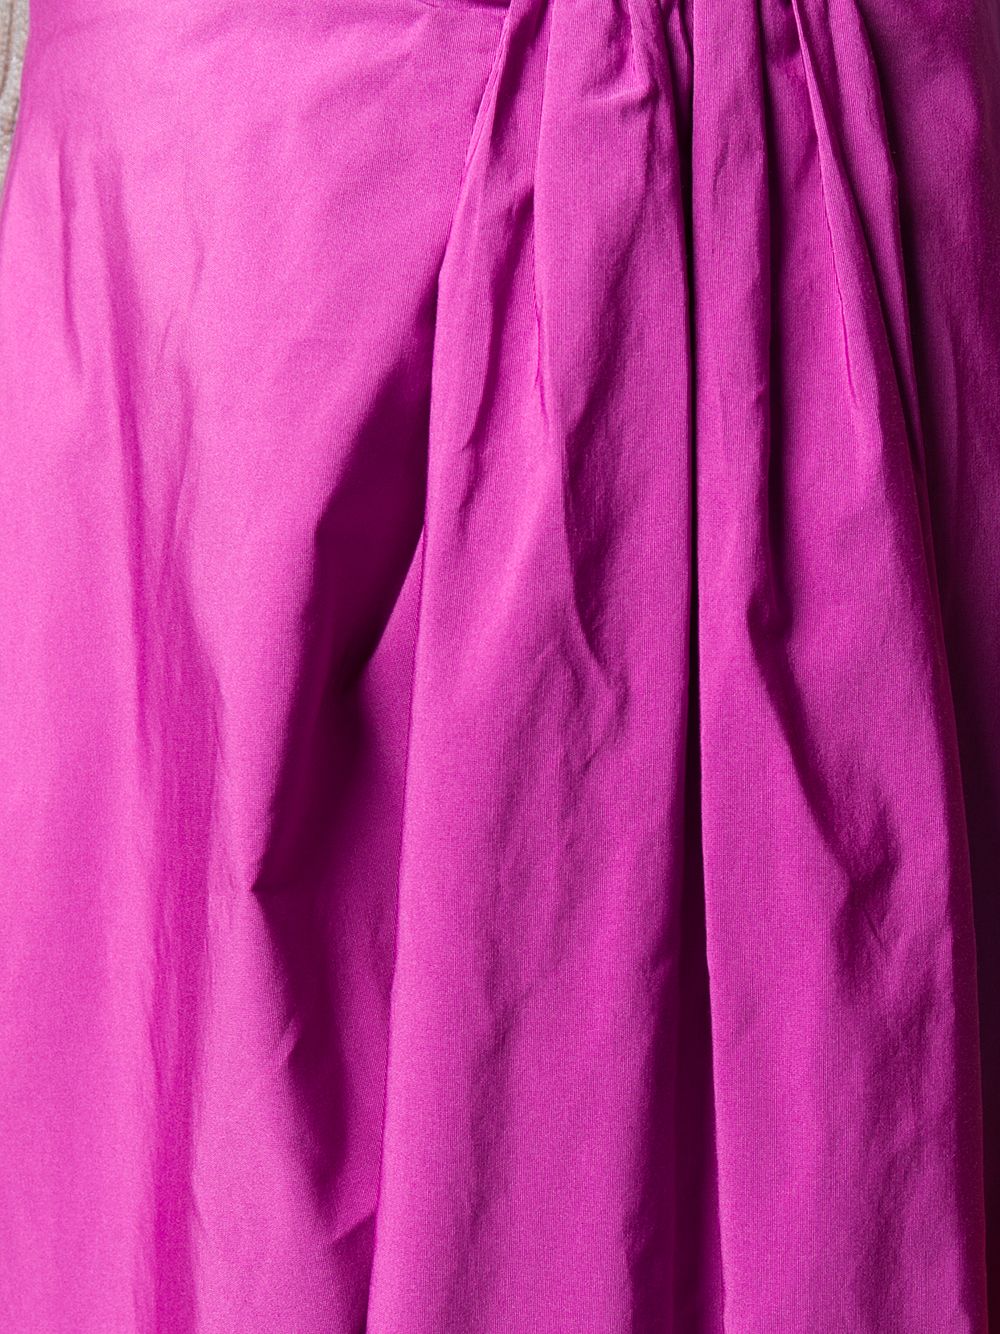 фото Valentino пышная юбка со сборками